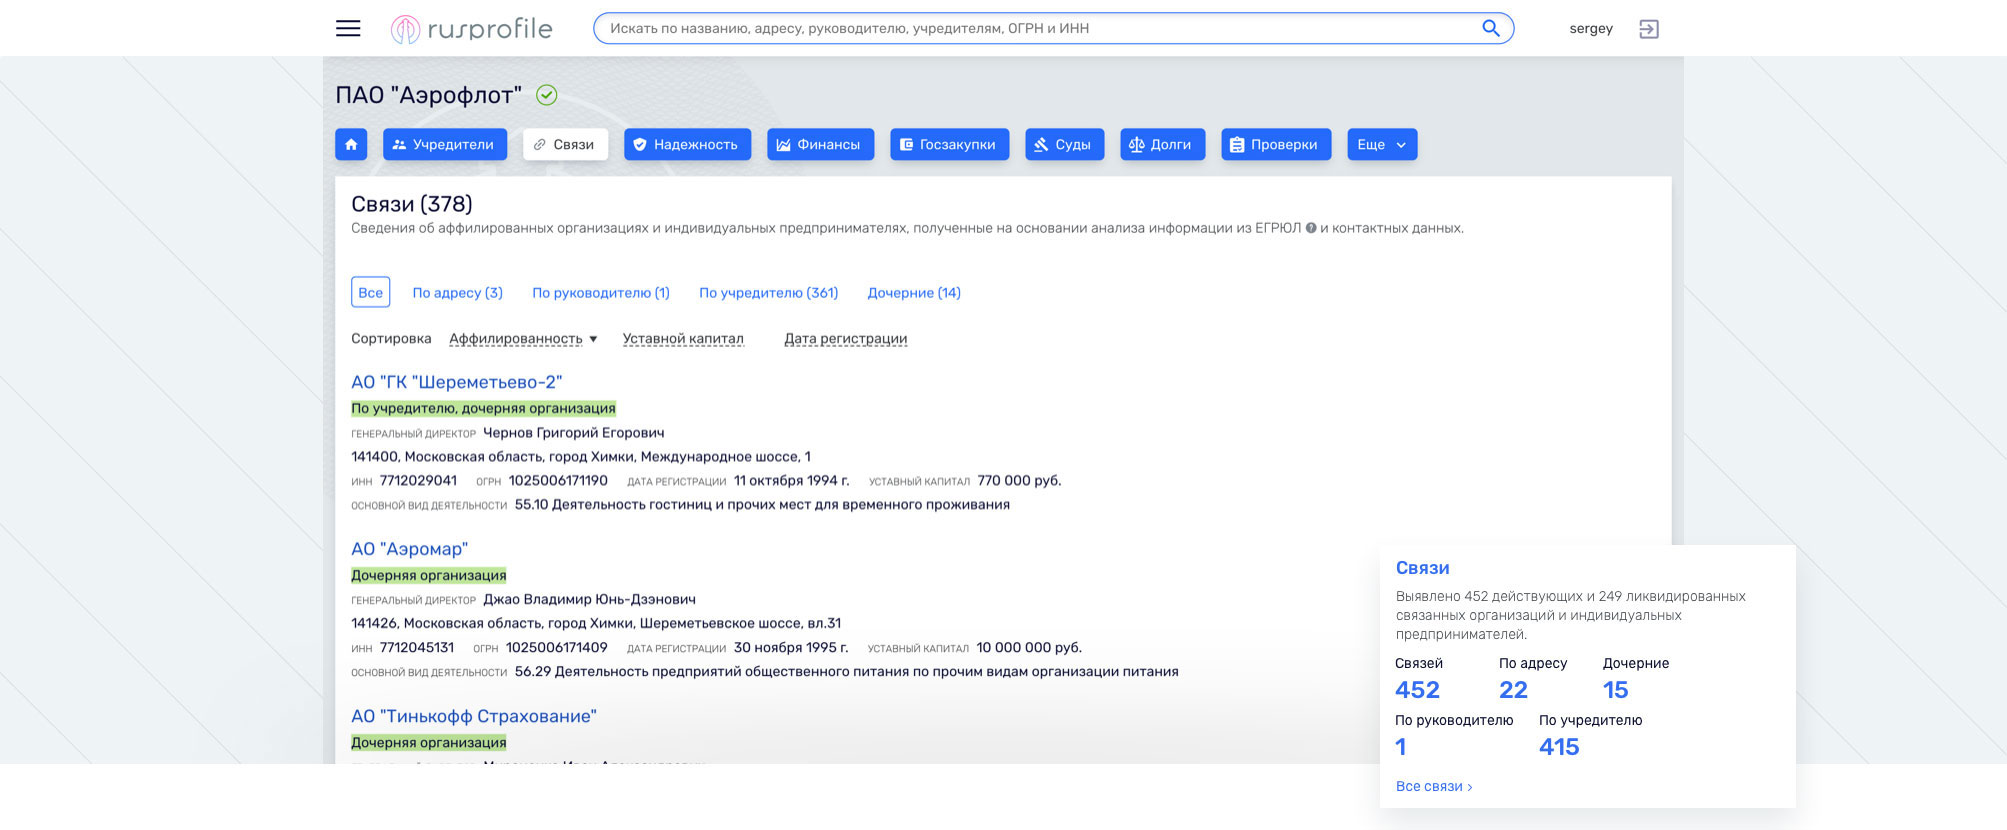 Аффилированные организации и предприниматели на Rusprofile.ru